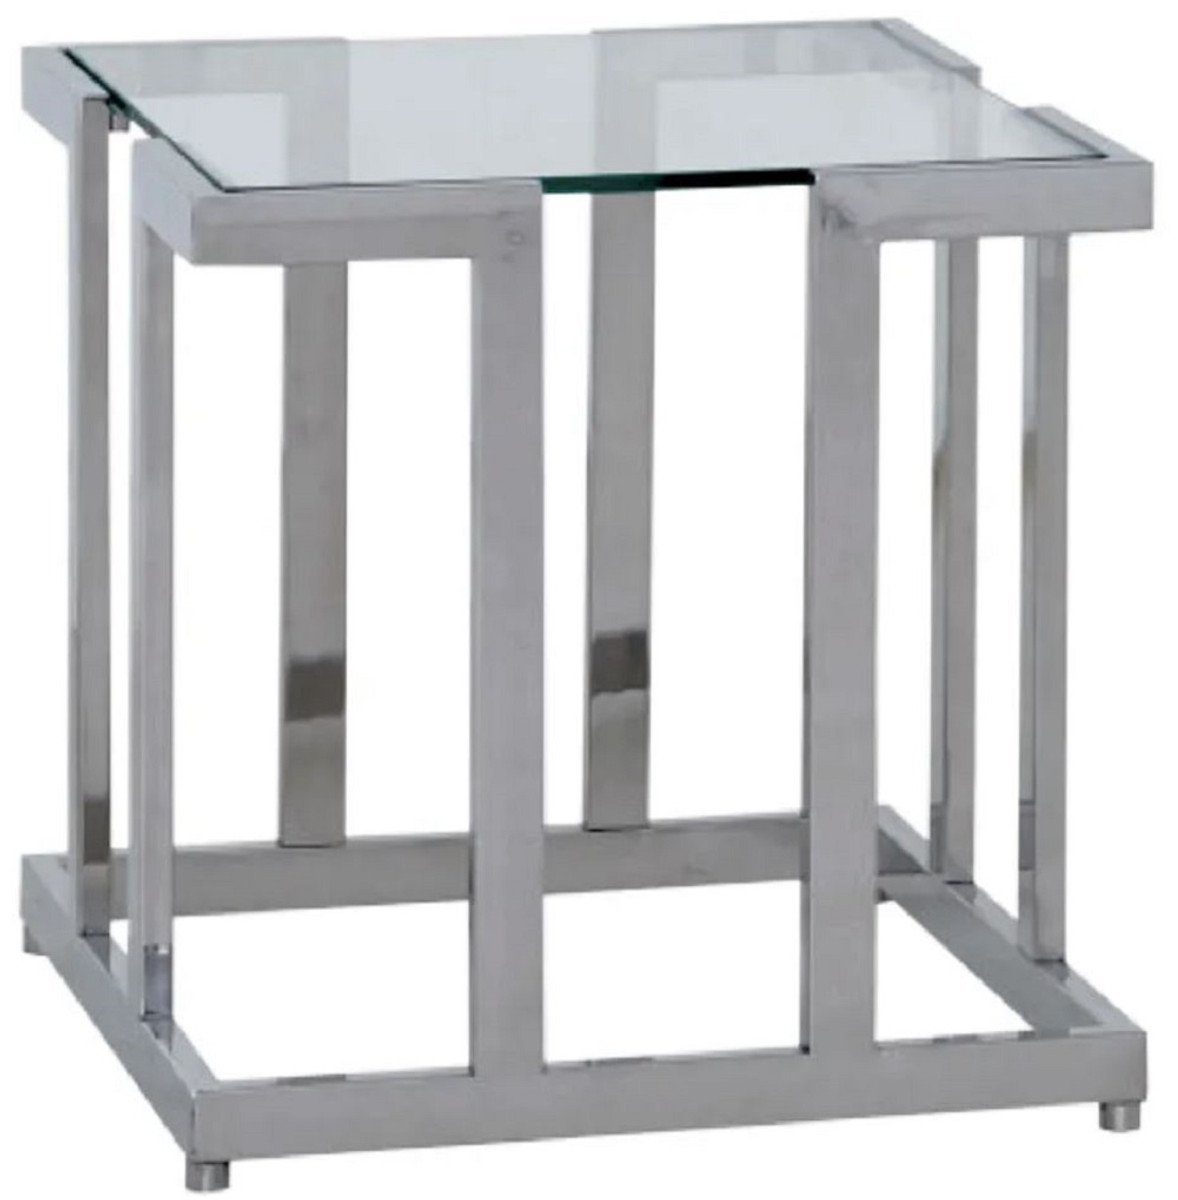 Casa Padrino Beistelltisch Luxus Beistelltisch Silber 60 x 60 x H. 55 cm - Quadratischer Metall Tisch mit Glasplatte - Möbel - Luxus Möbel